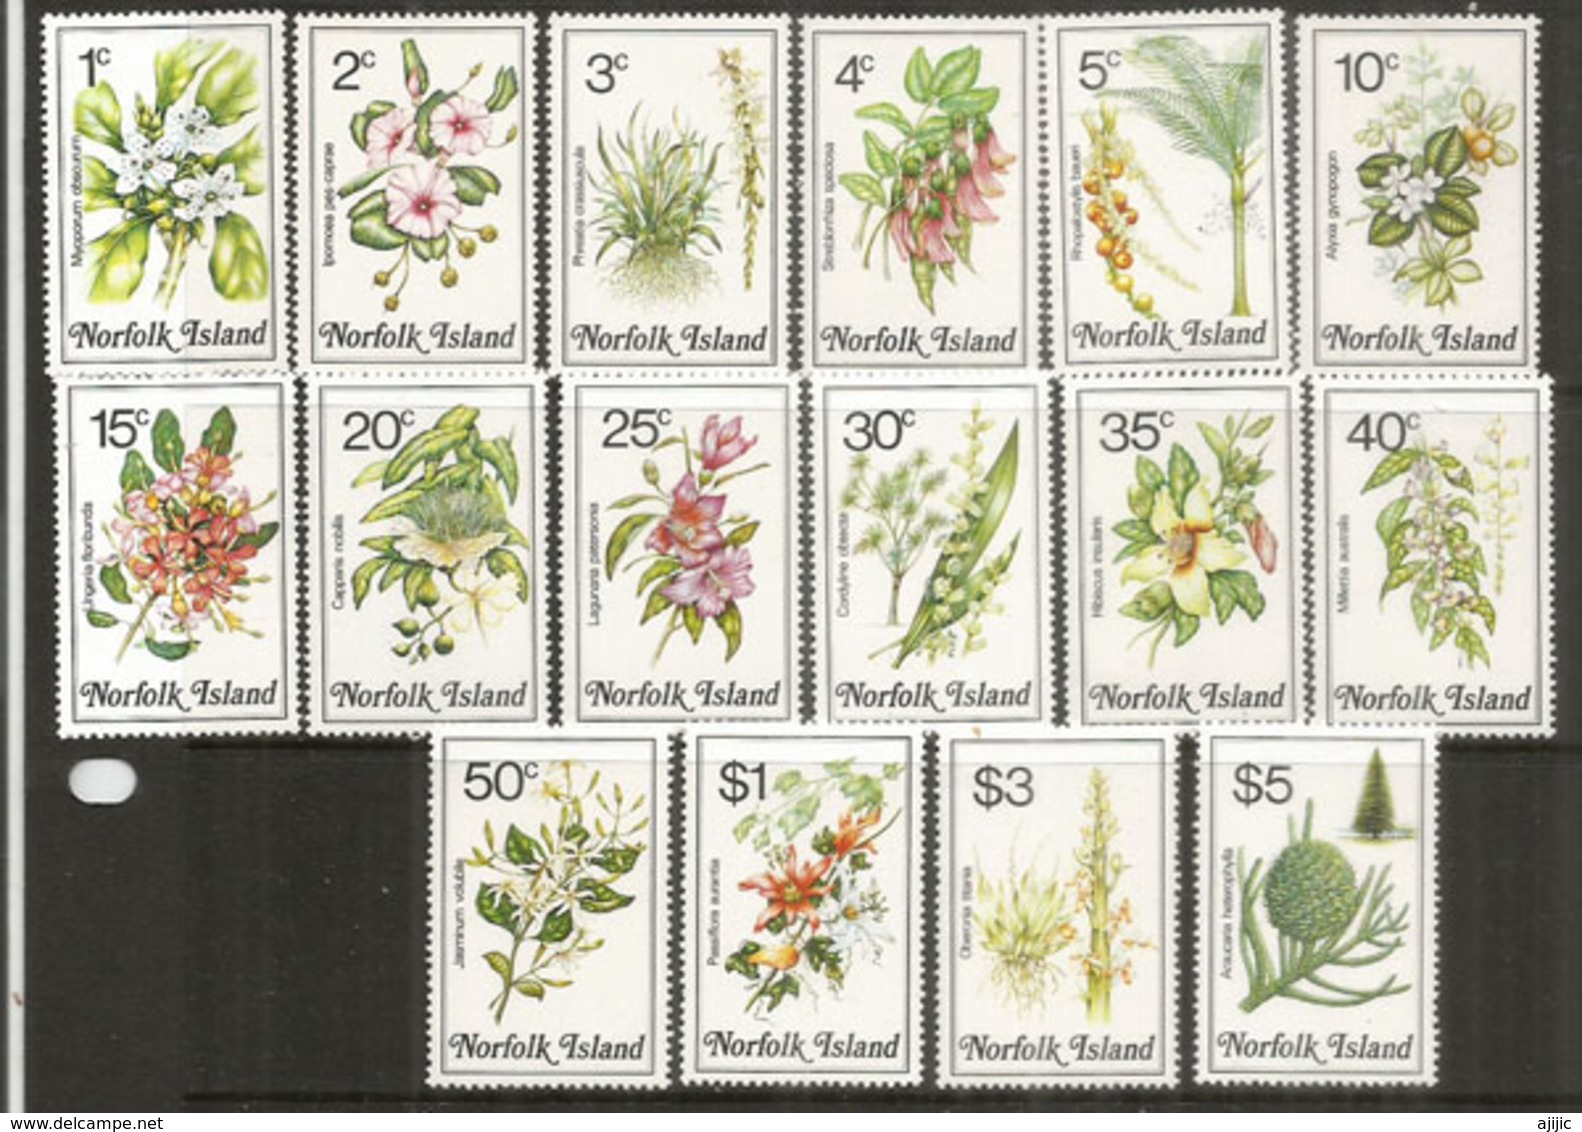 Les Fleurs Et Végétation De L'ÎLE NORFOLK , Série Complète, Côte 35,00 Euro - Isola Norfolk